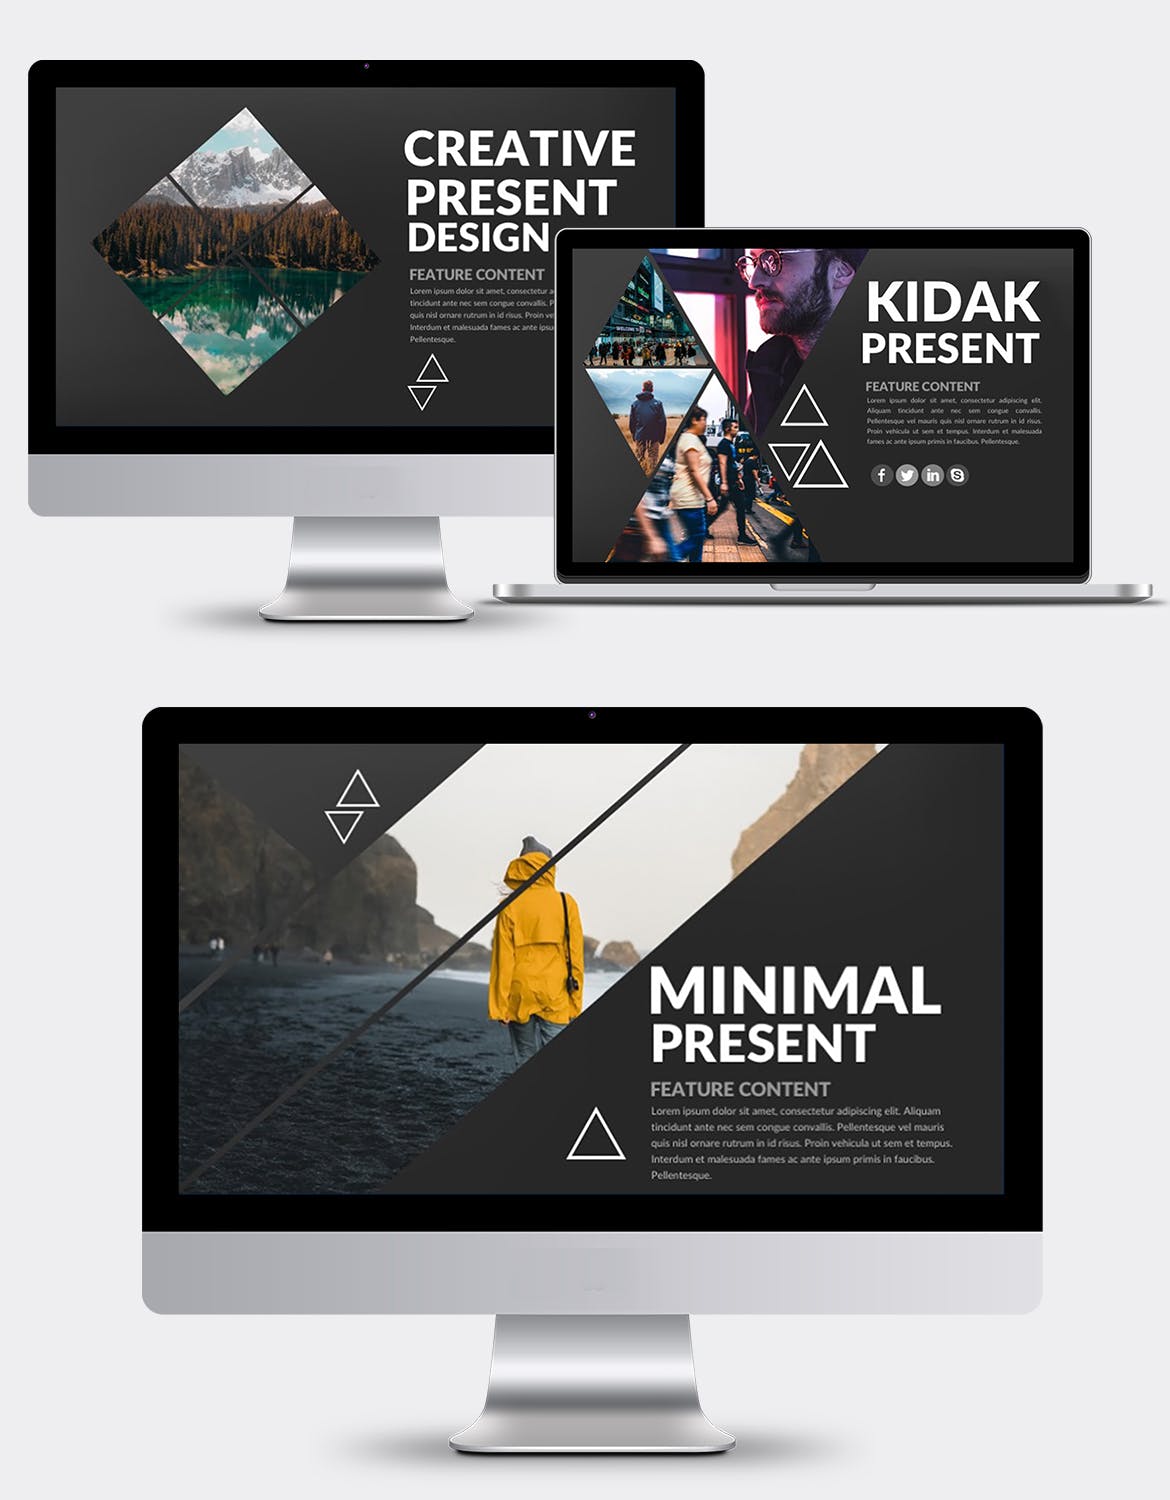 多图设计风格旅游/摄影行业适用的PPT模板 Kidak Powerpoint Template插图1